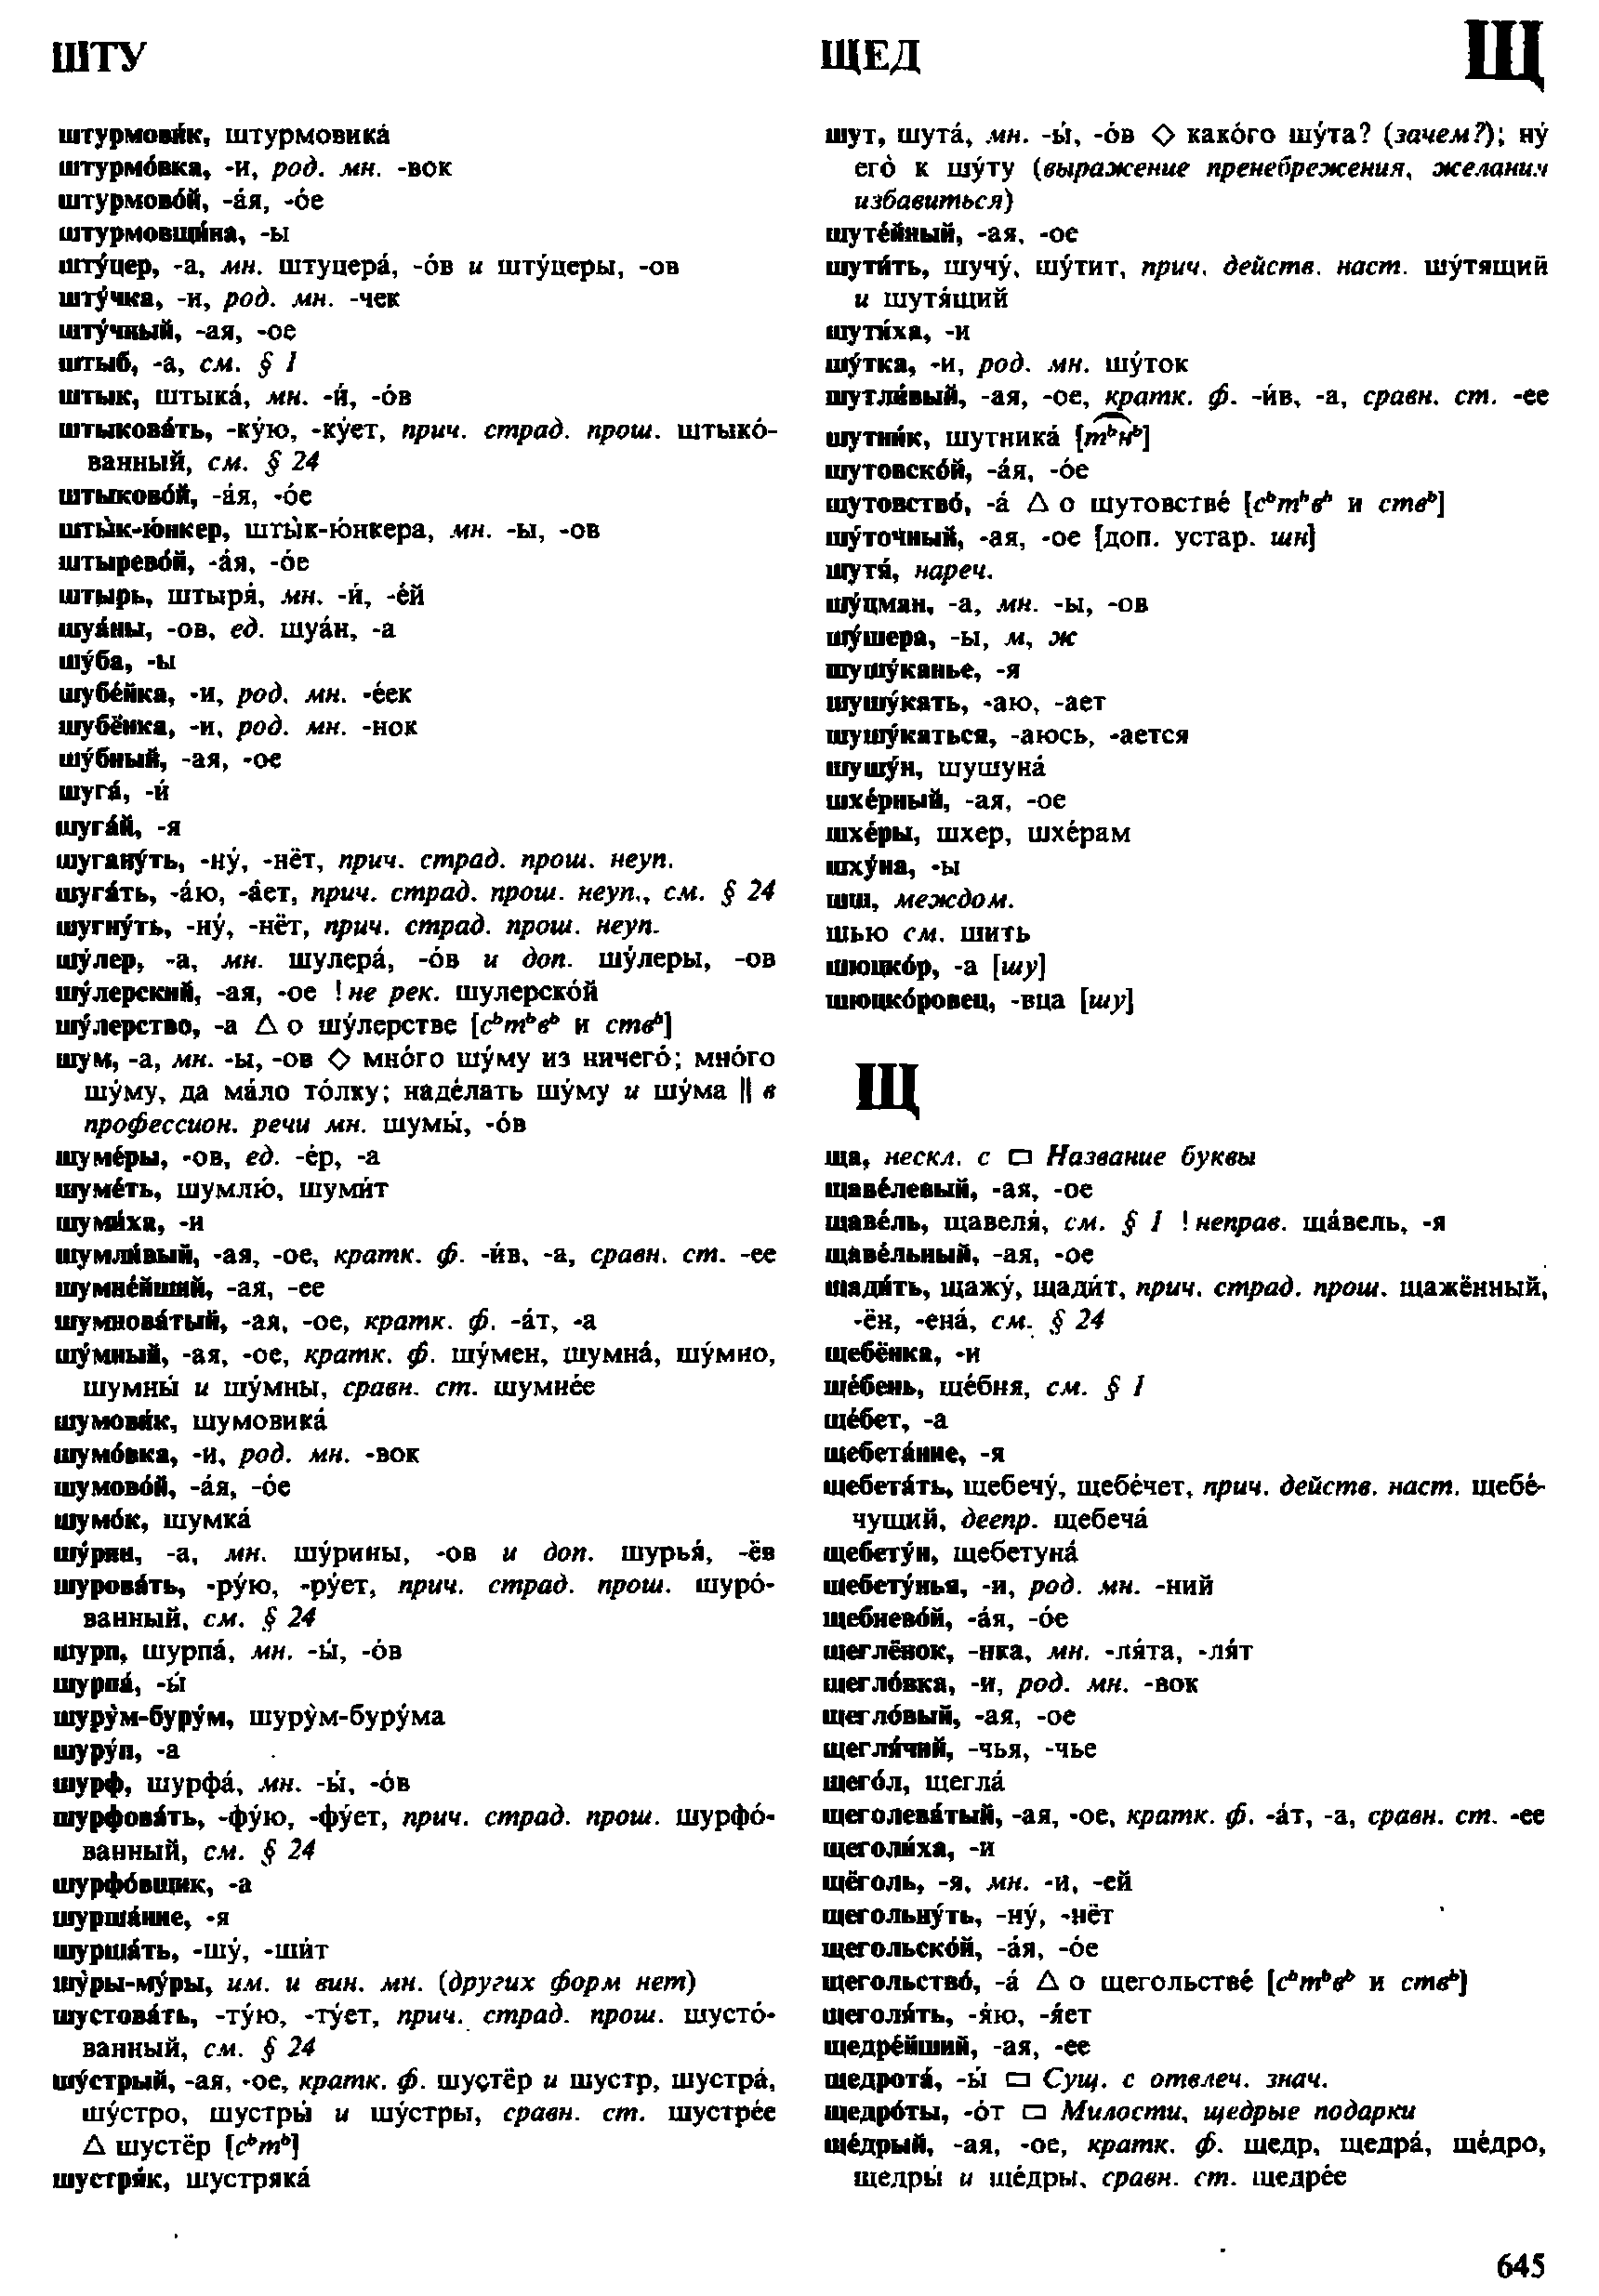 орфоэпический словарь Аванесова (4-е издание) pdf скан страницы 645